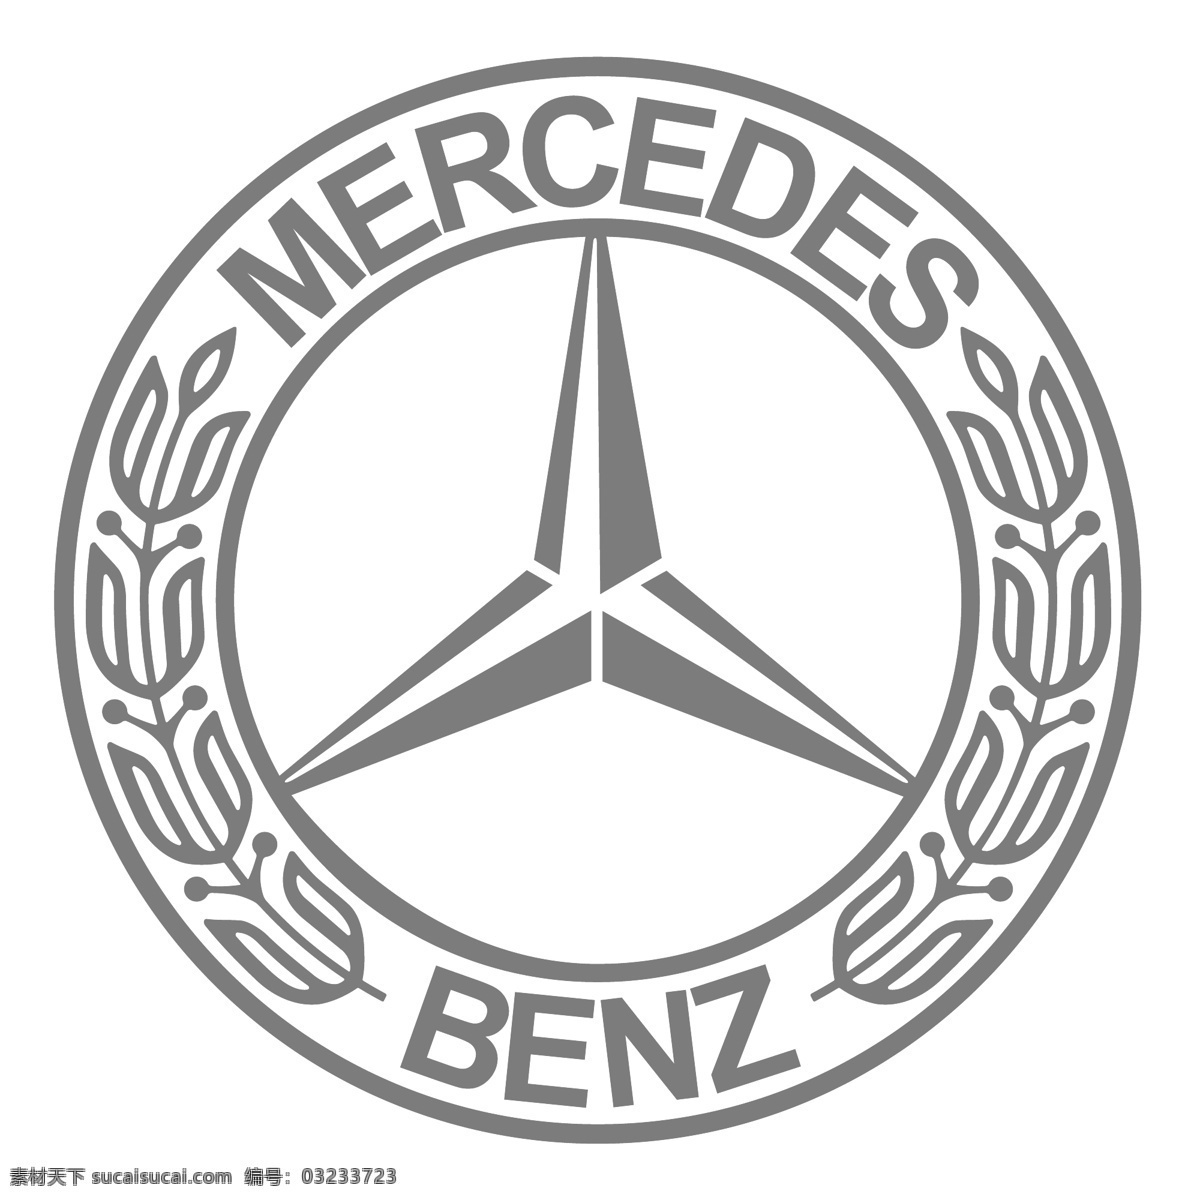 梅 赛 德斯 奔驰 矢量标志下载 免费矢量标识 商标 品牌标识 标识 矢量 免费 品牌 公司 白色